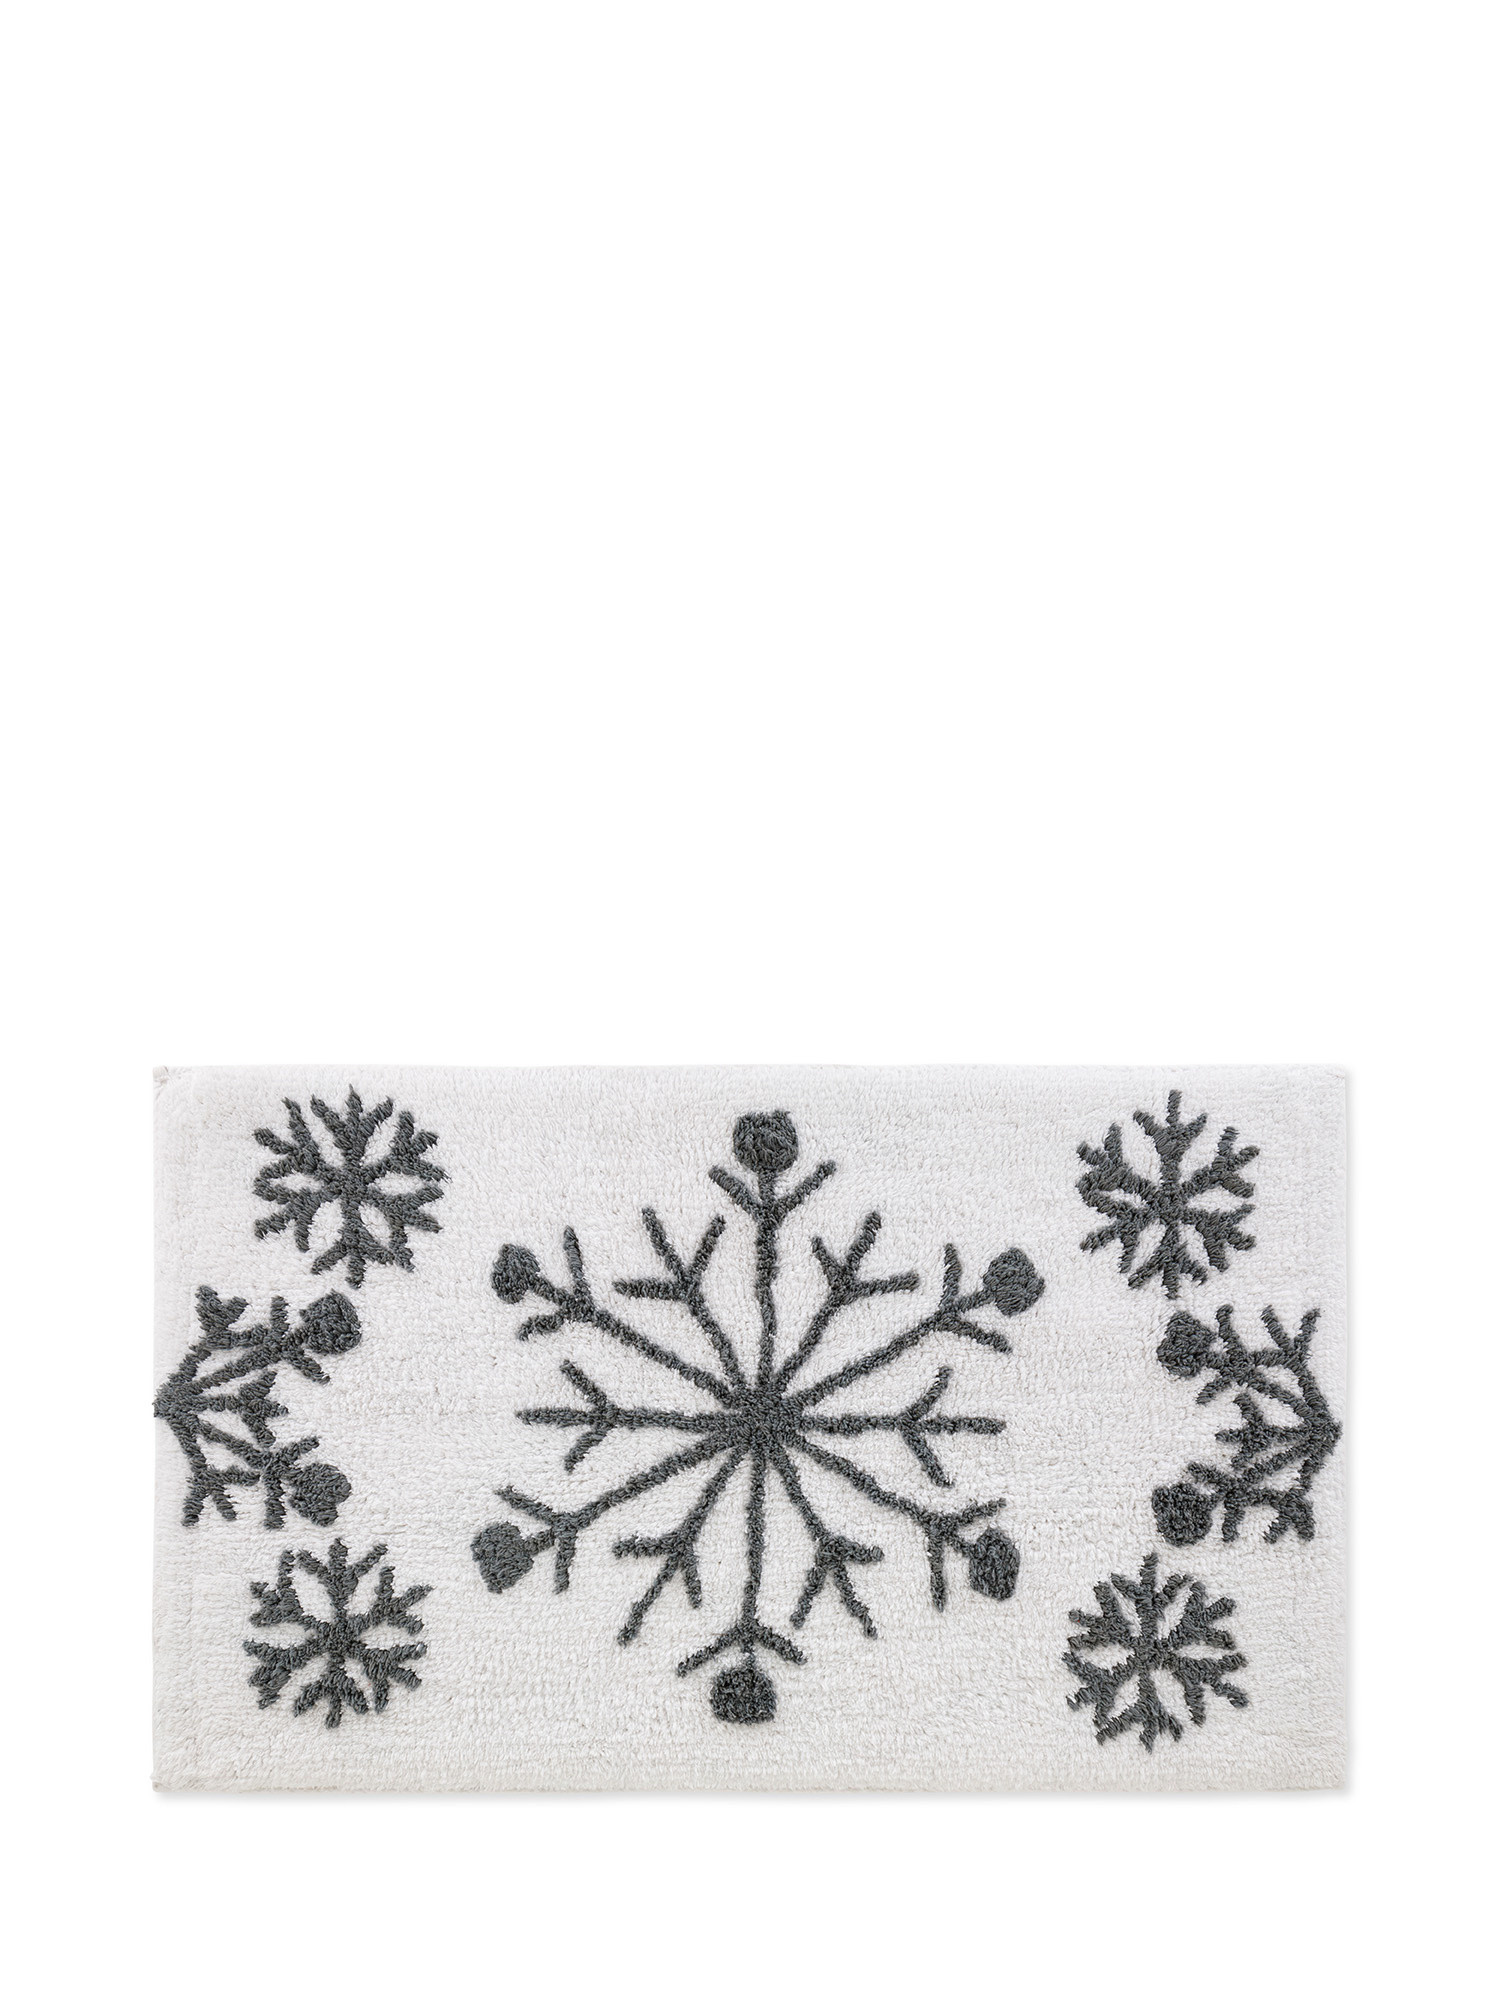 Tappeto bagno cotone ricamo fiocchi di neve, White, large image number 0